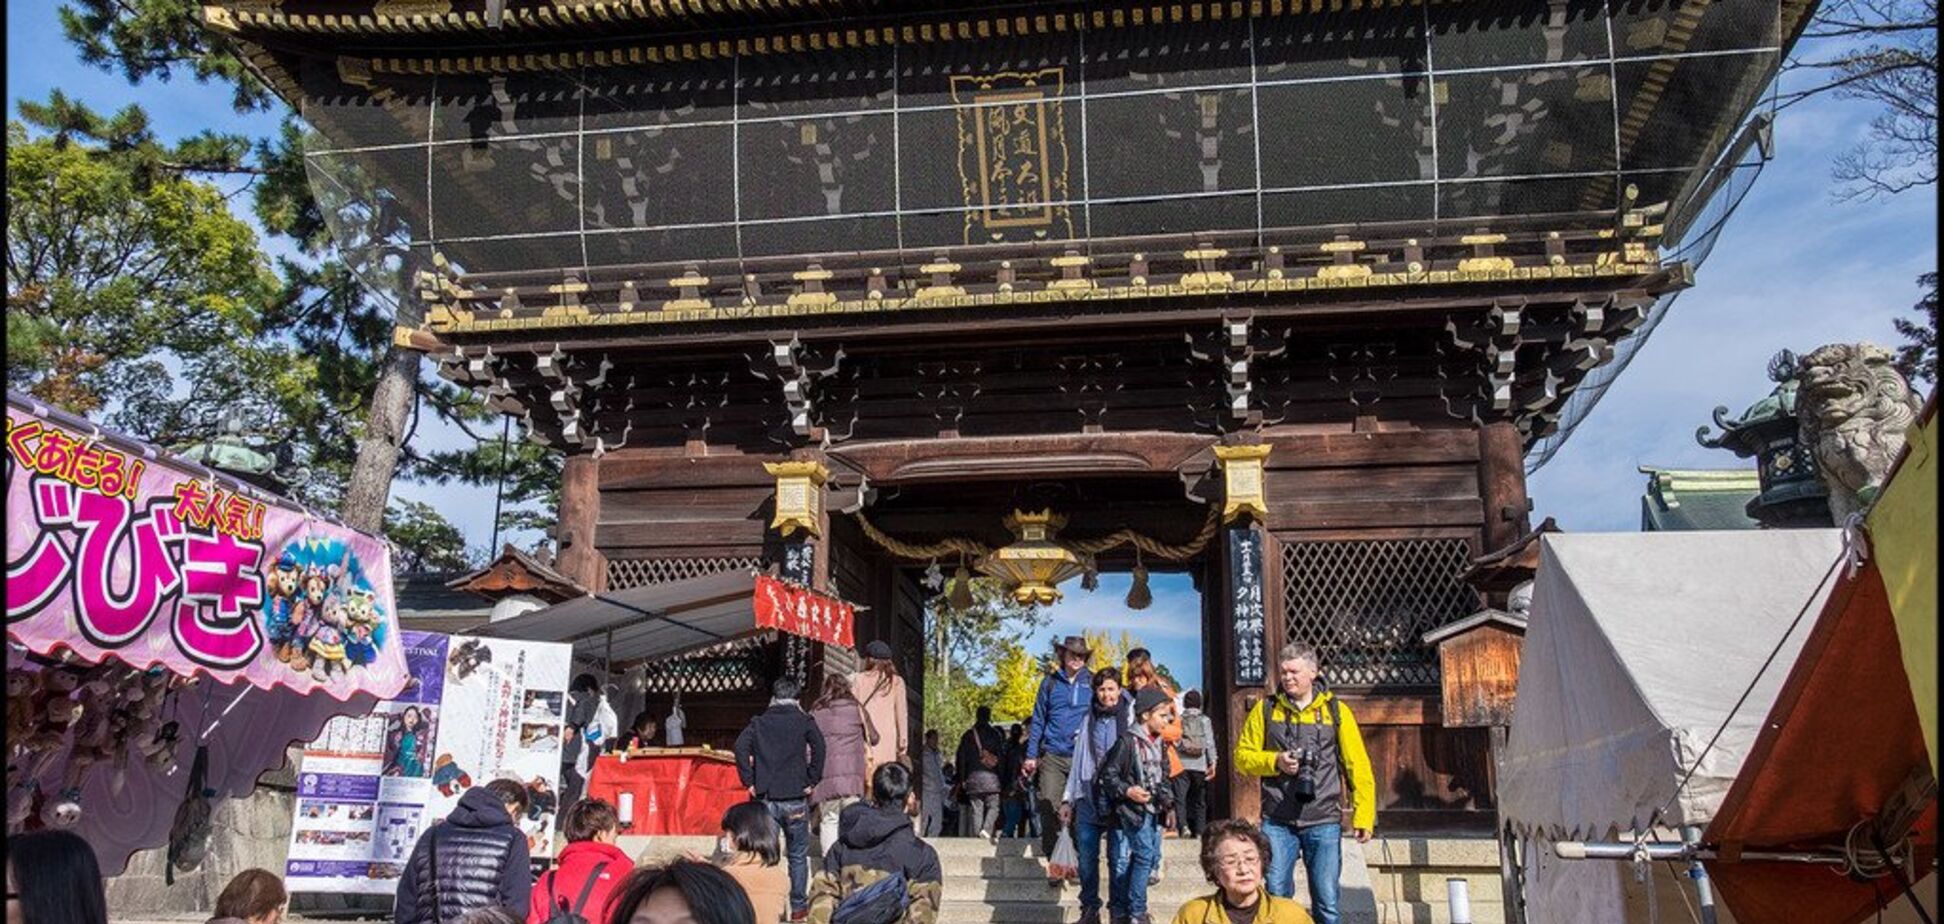 Ринок у древньому храмі: блогер розповіла про унікальну подію у Японії